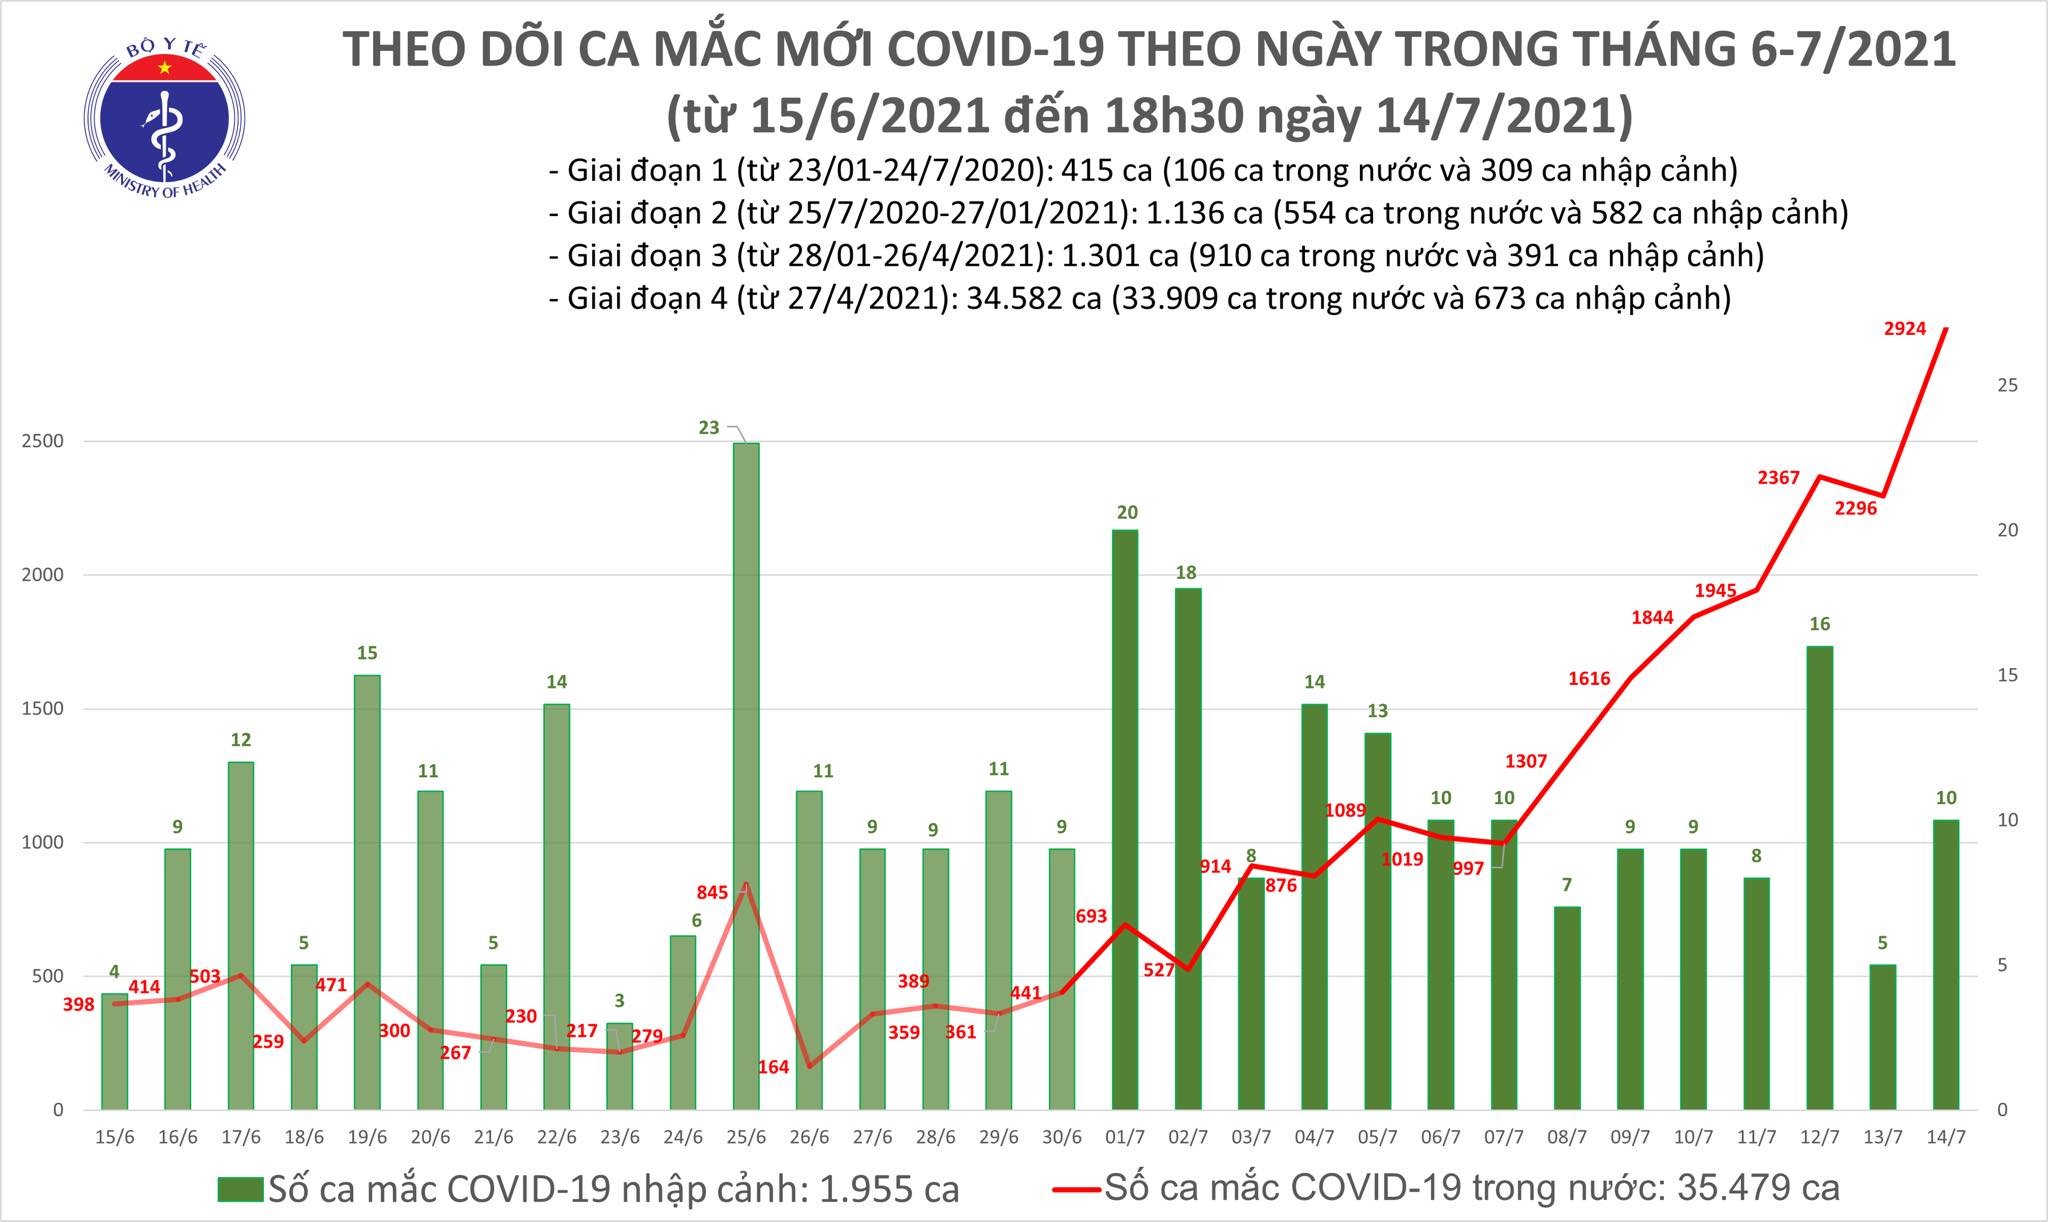 Tối 14/7: Thêm 829 ca mắc COVID-19, nâng tổng số mắc trong ngày lên 2.934 ca 